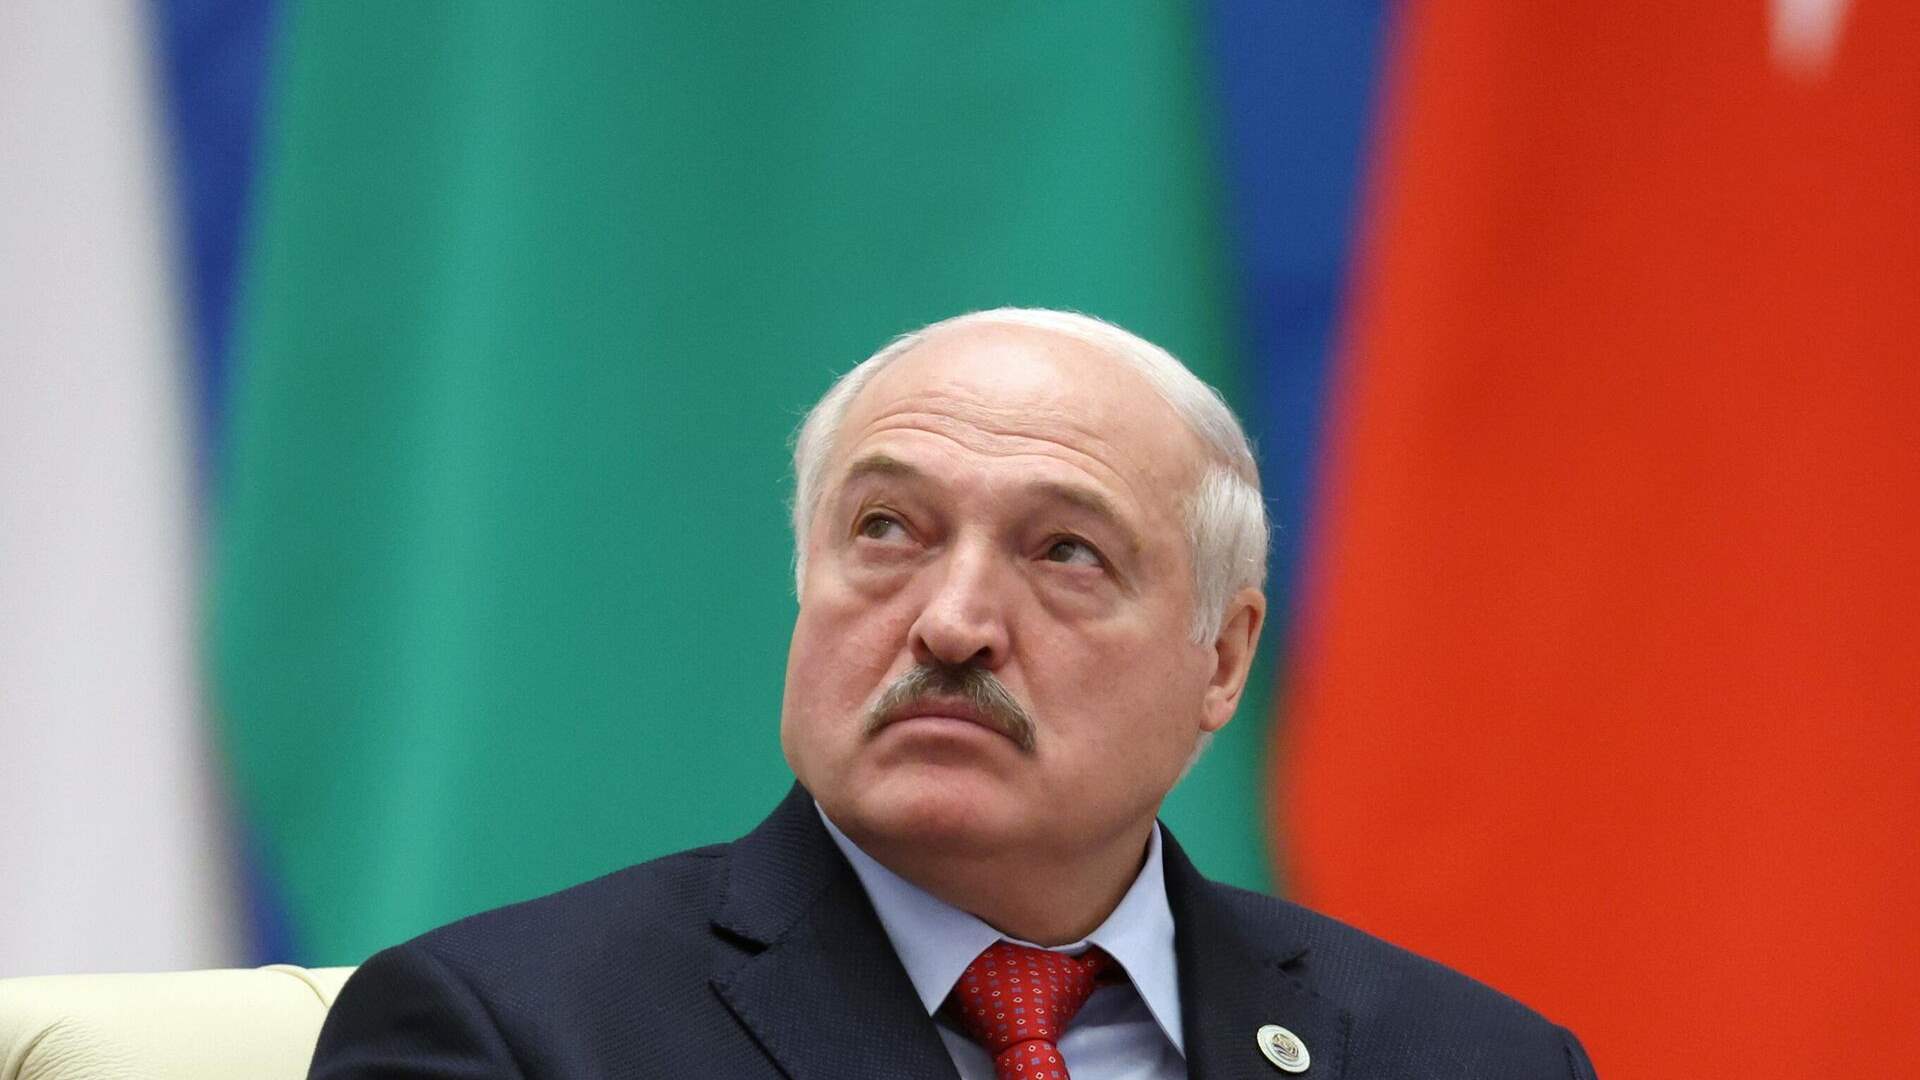 رئيس روسيا البيضاء يعتزم الترشح لولاية جديدة في 2025